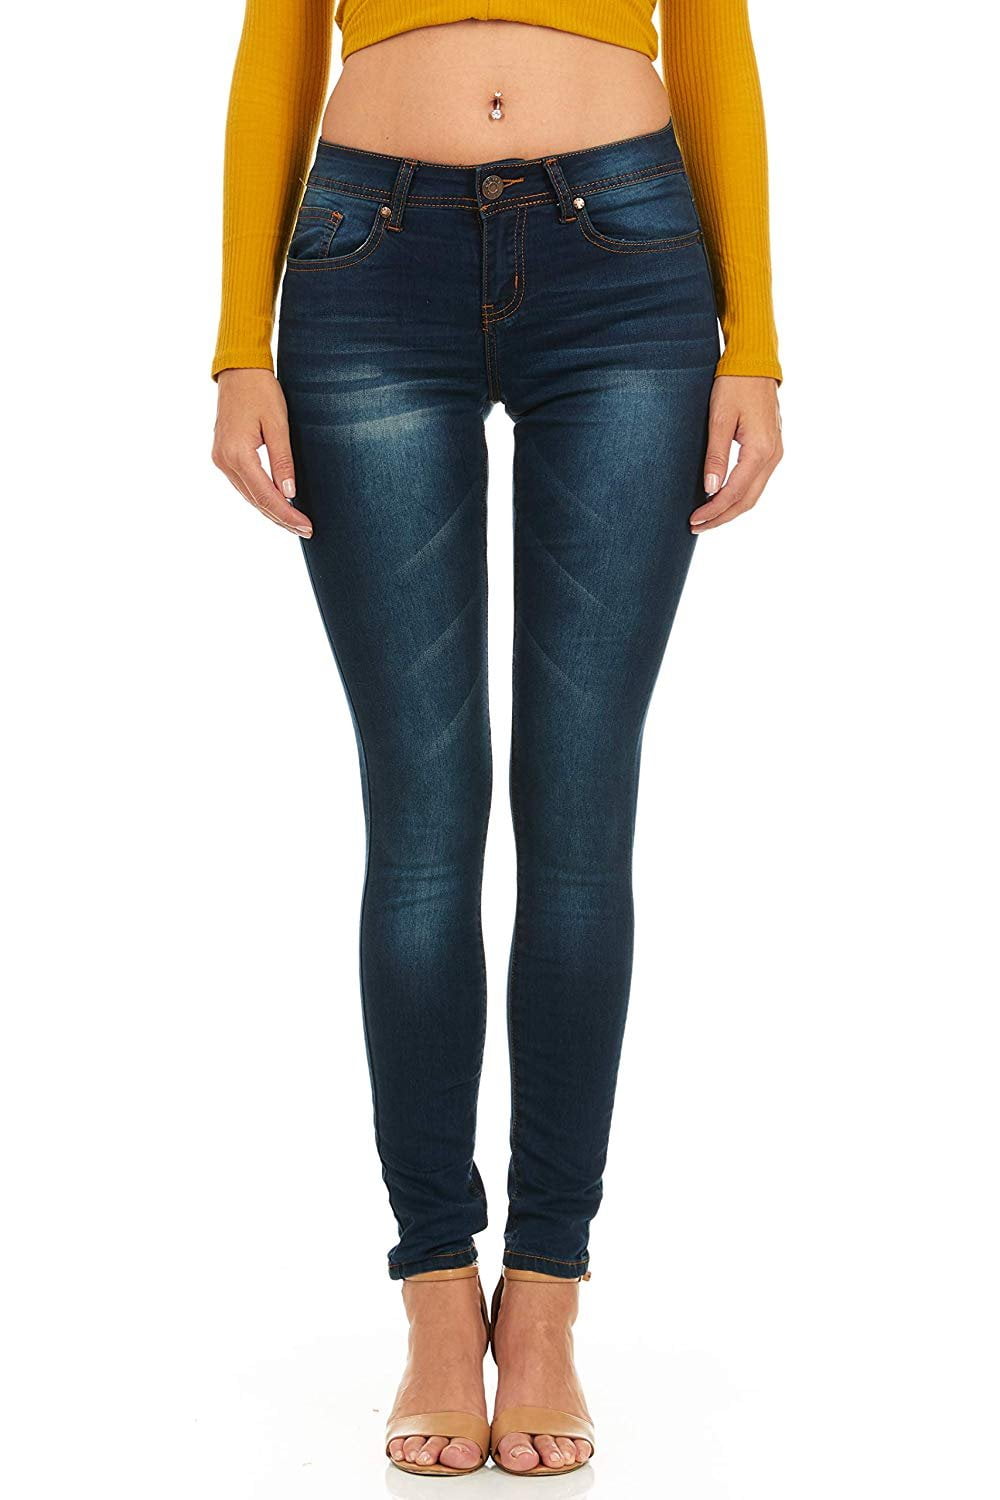 size 7 slim girl jeans